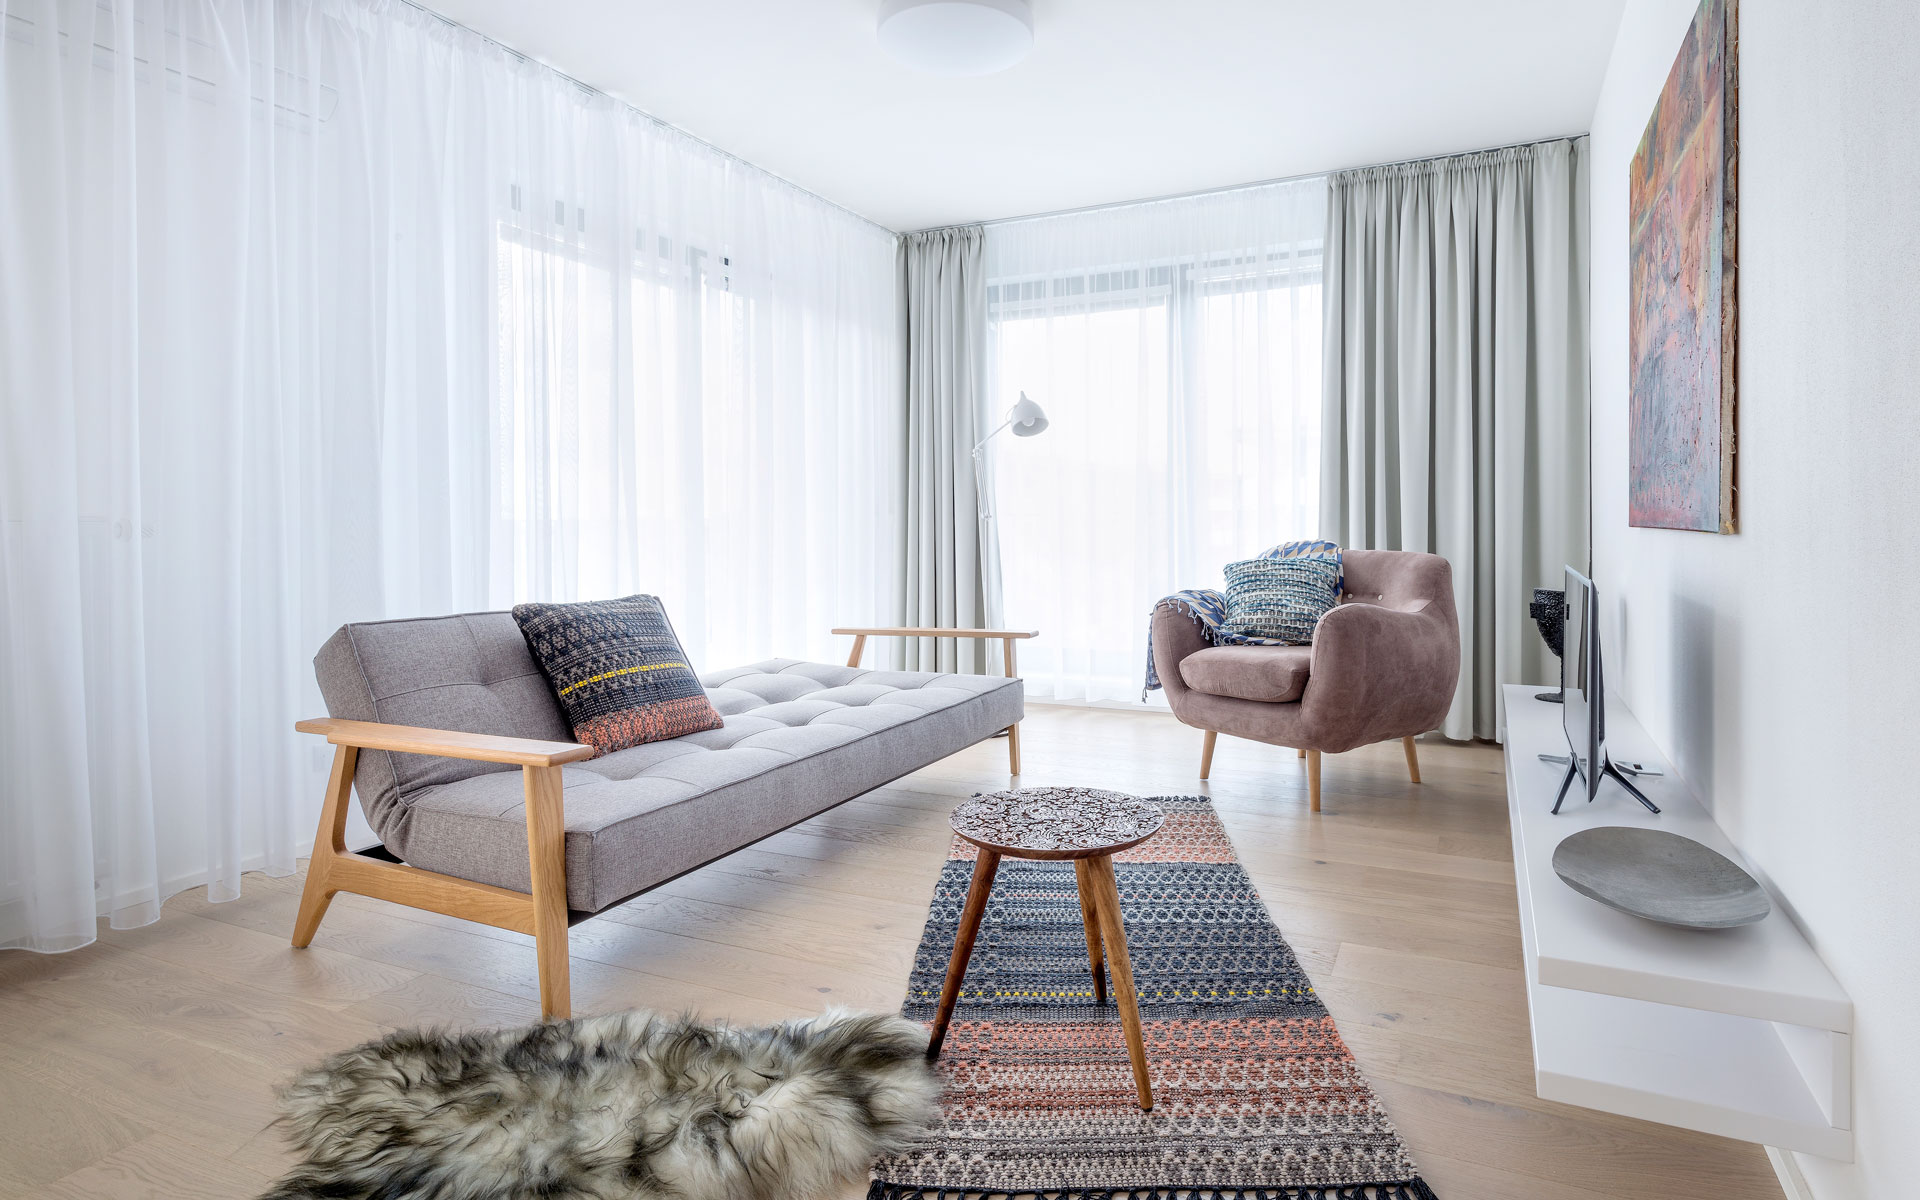 Obývačka, škandinávsky dizajn, sedačka splitback, škandinávsky interiér